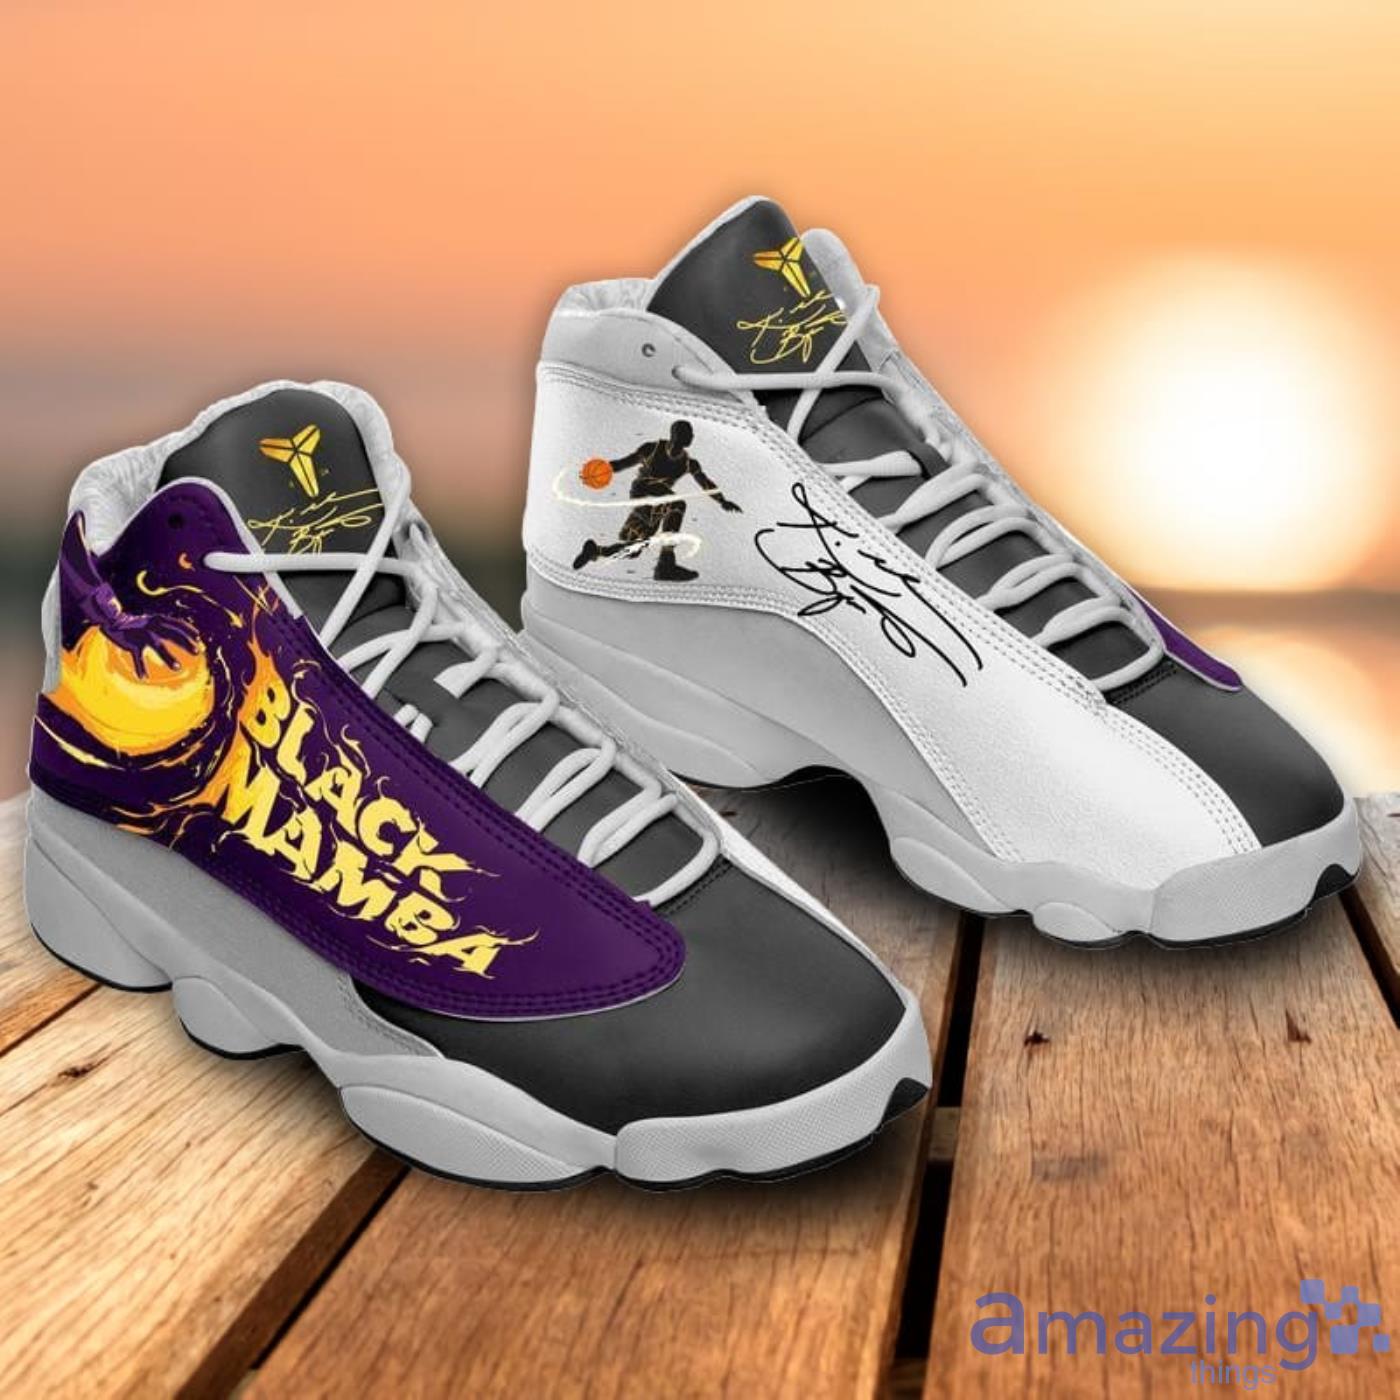 Kobe Bryant La Lakers Limited Edition Air Jordan 13 Sneakers Shoes